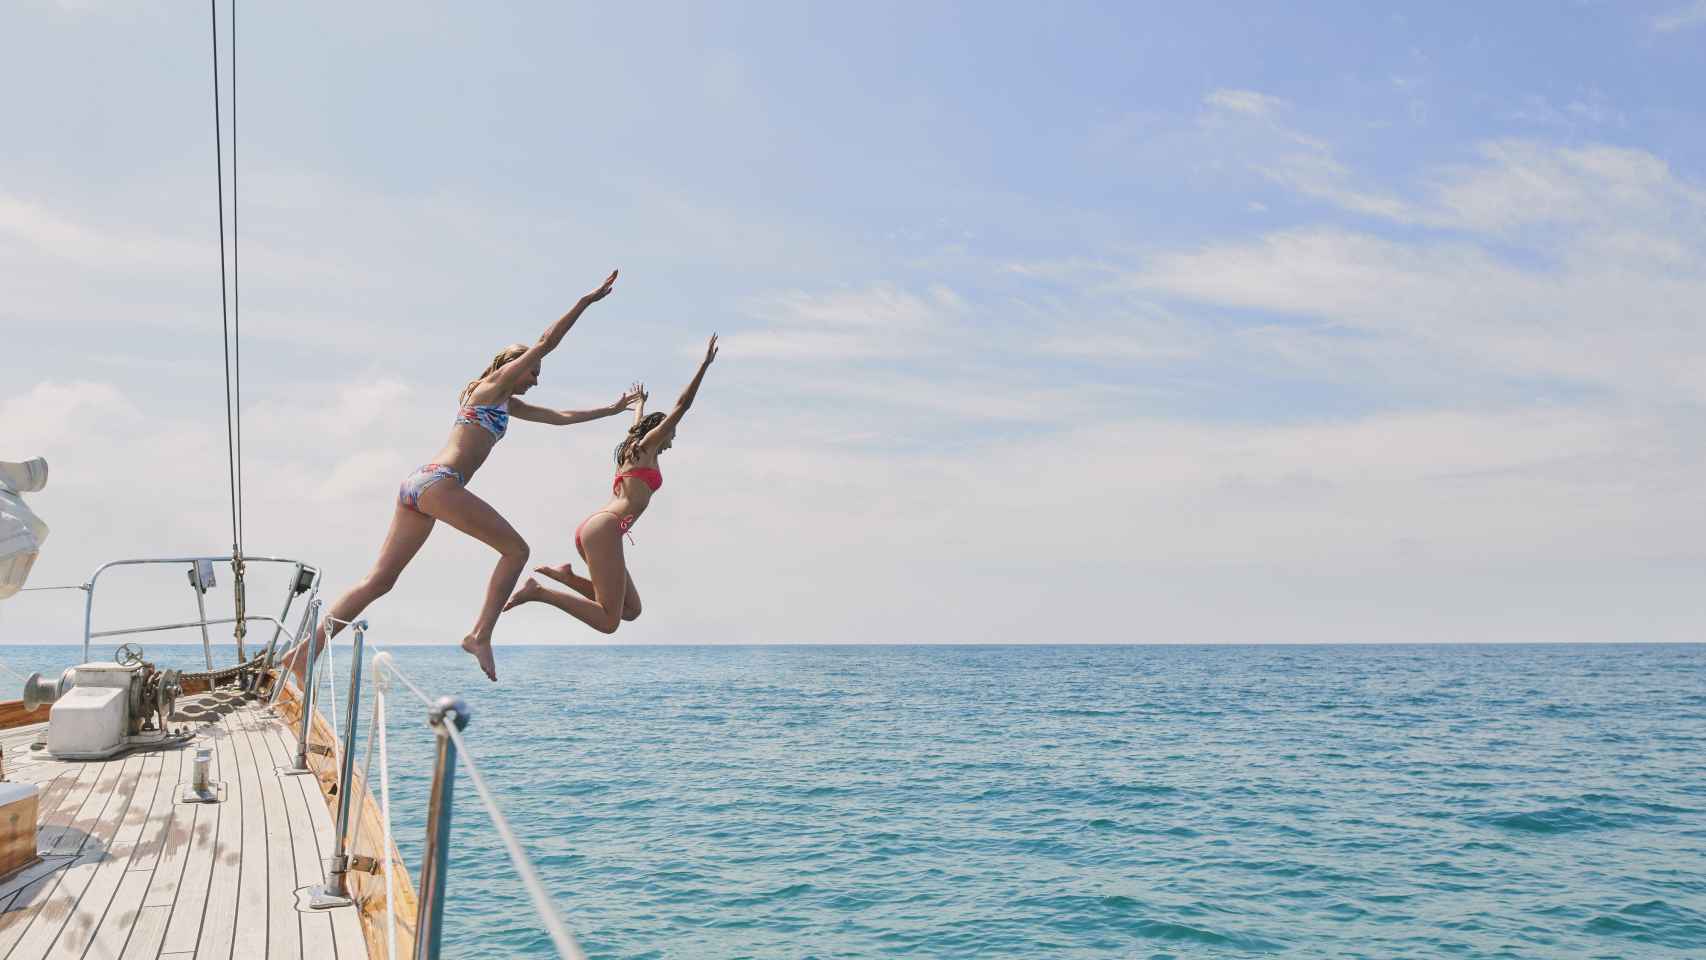 Imagen de archivo dos chicas saltando desde un barco.